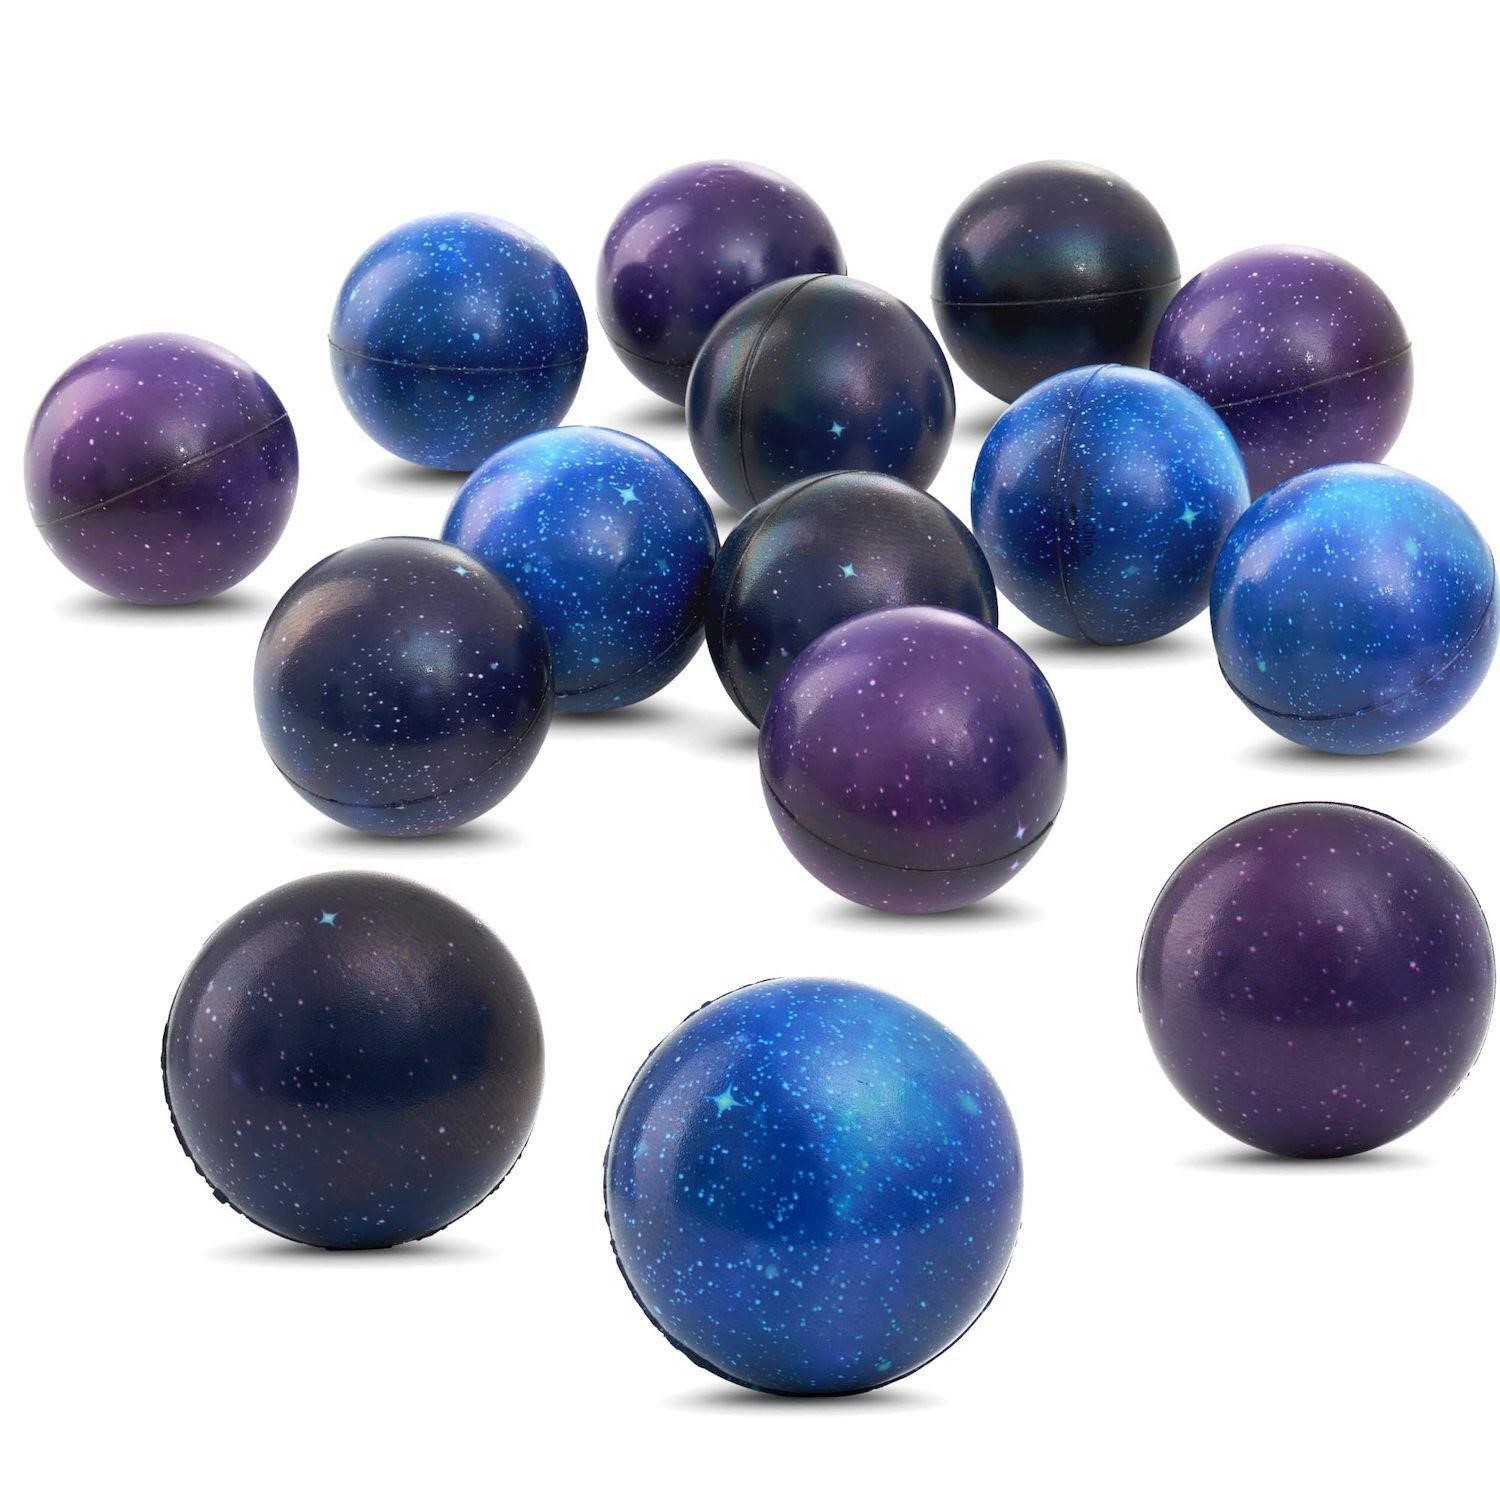 $11  Space Theme Stress Balls Set  12pcs